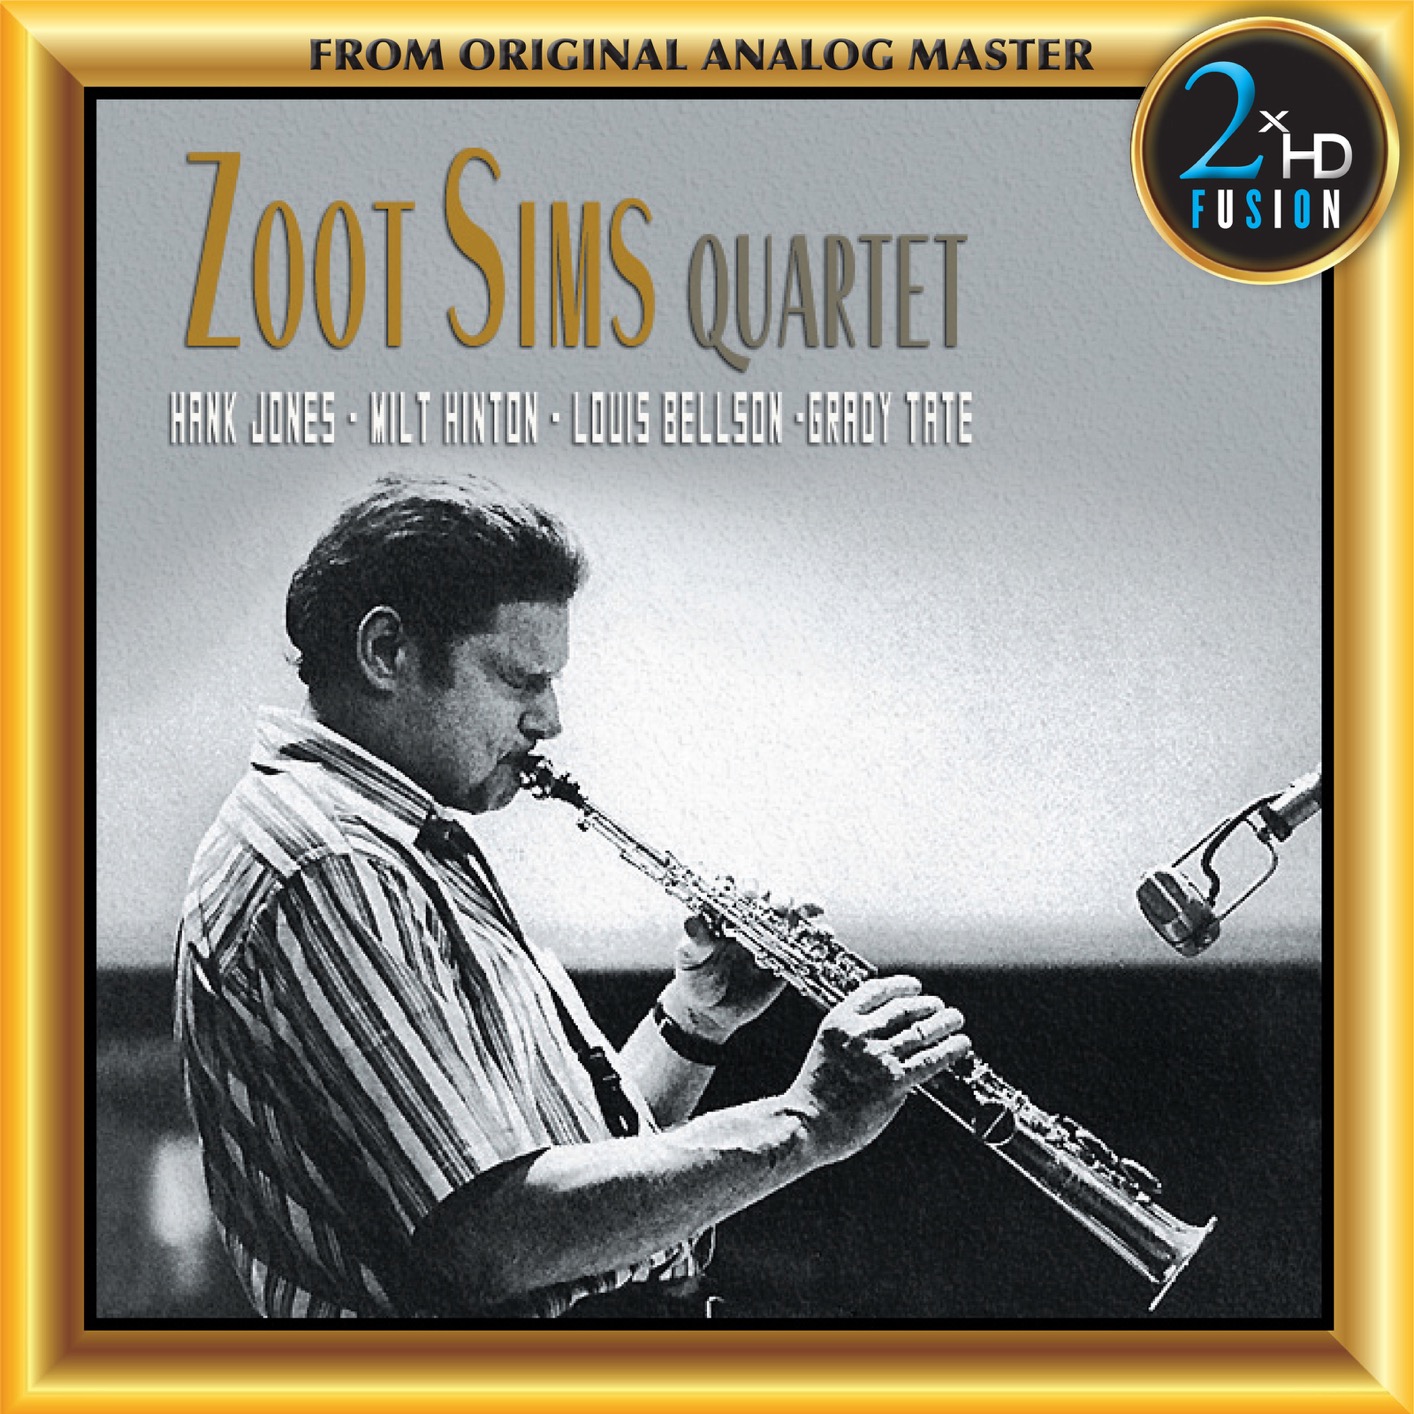 Zoot Sims Quartet – Zoot Sims Quartet (Remastered) (2018) [Official Digital Download 24bit/192kHz]